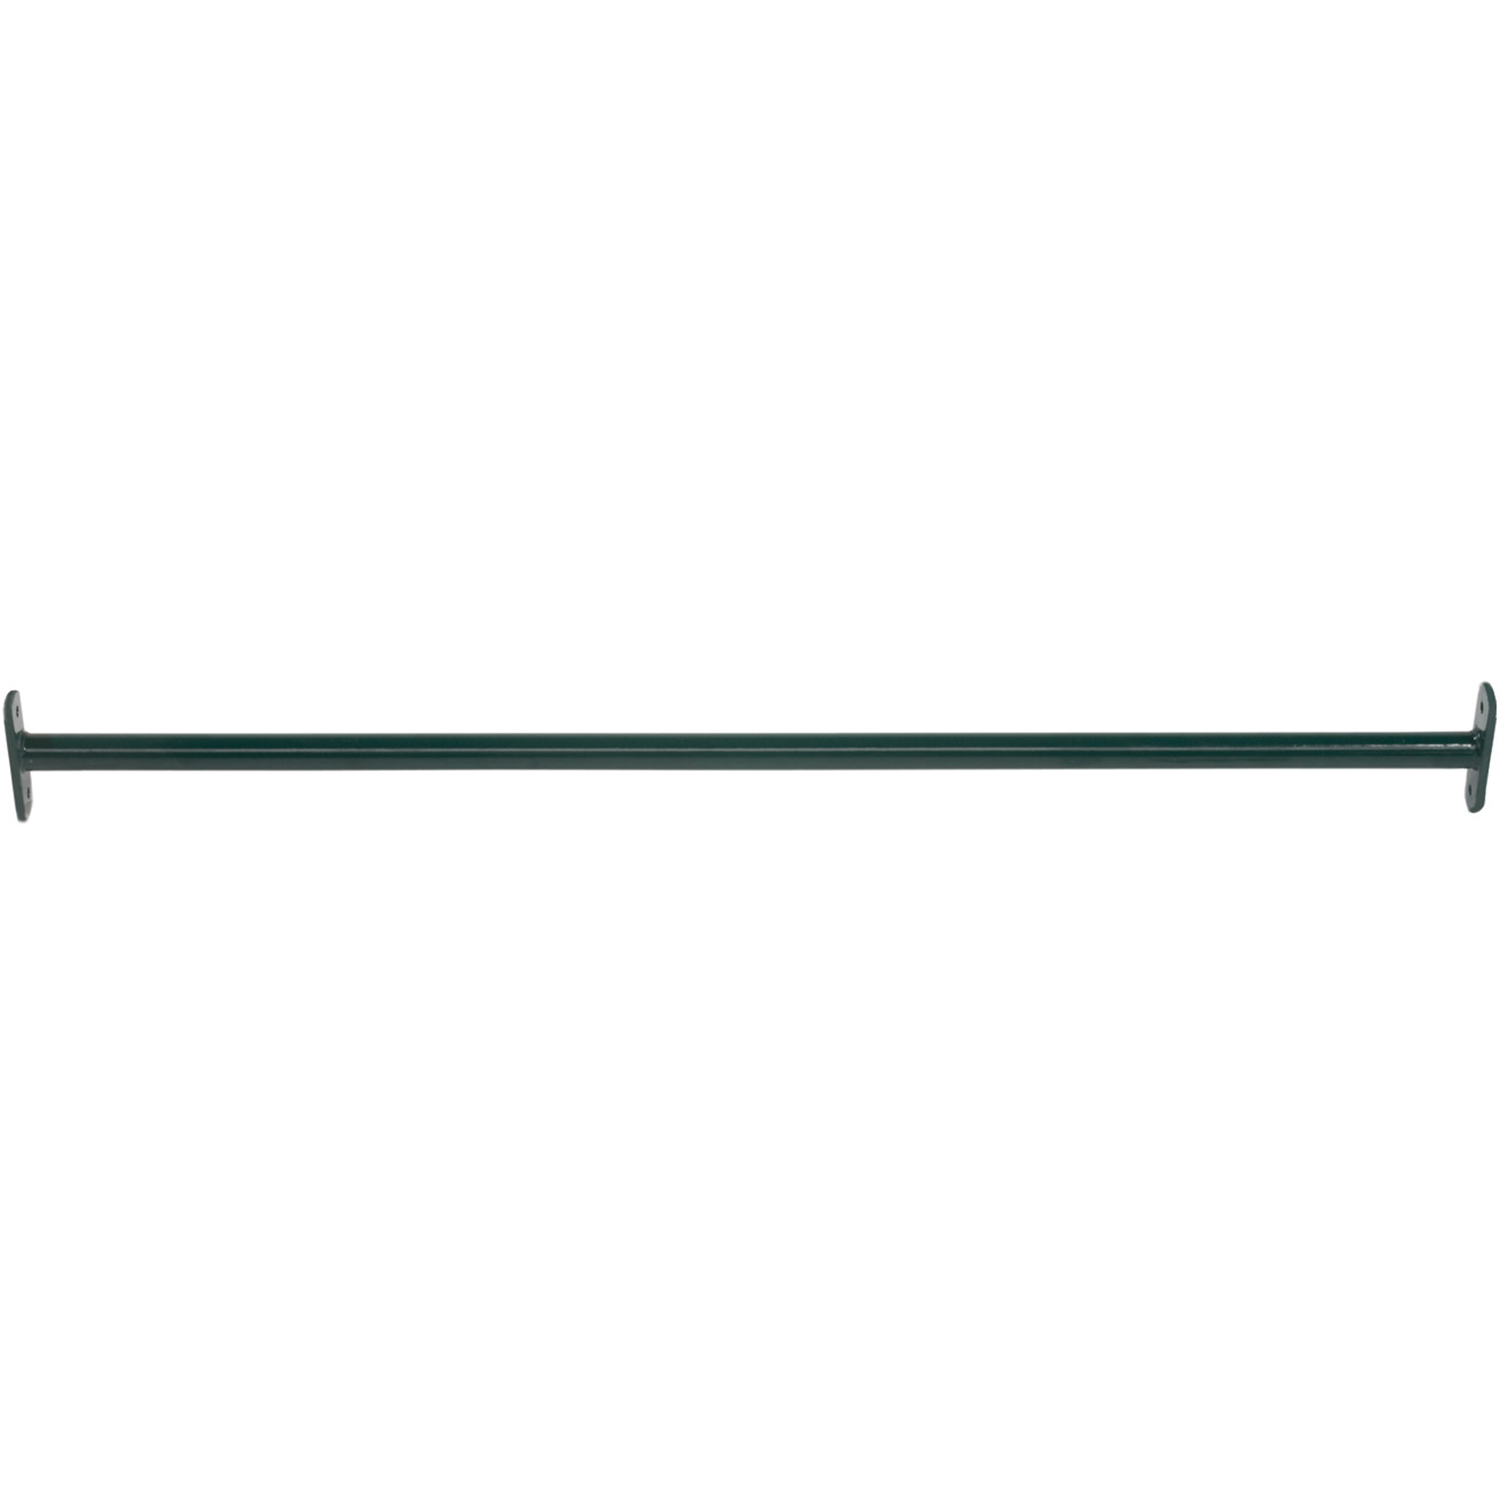 KBT metal tumble bar - 1250mm - green